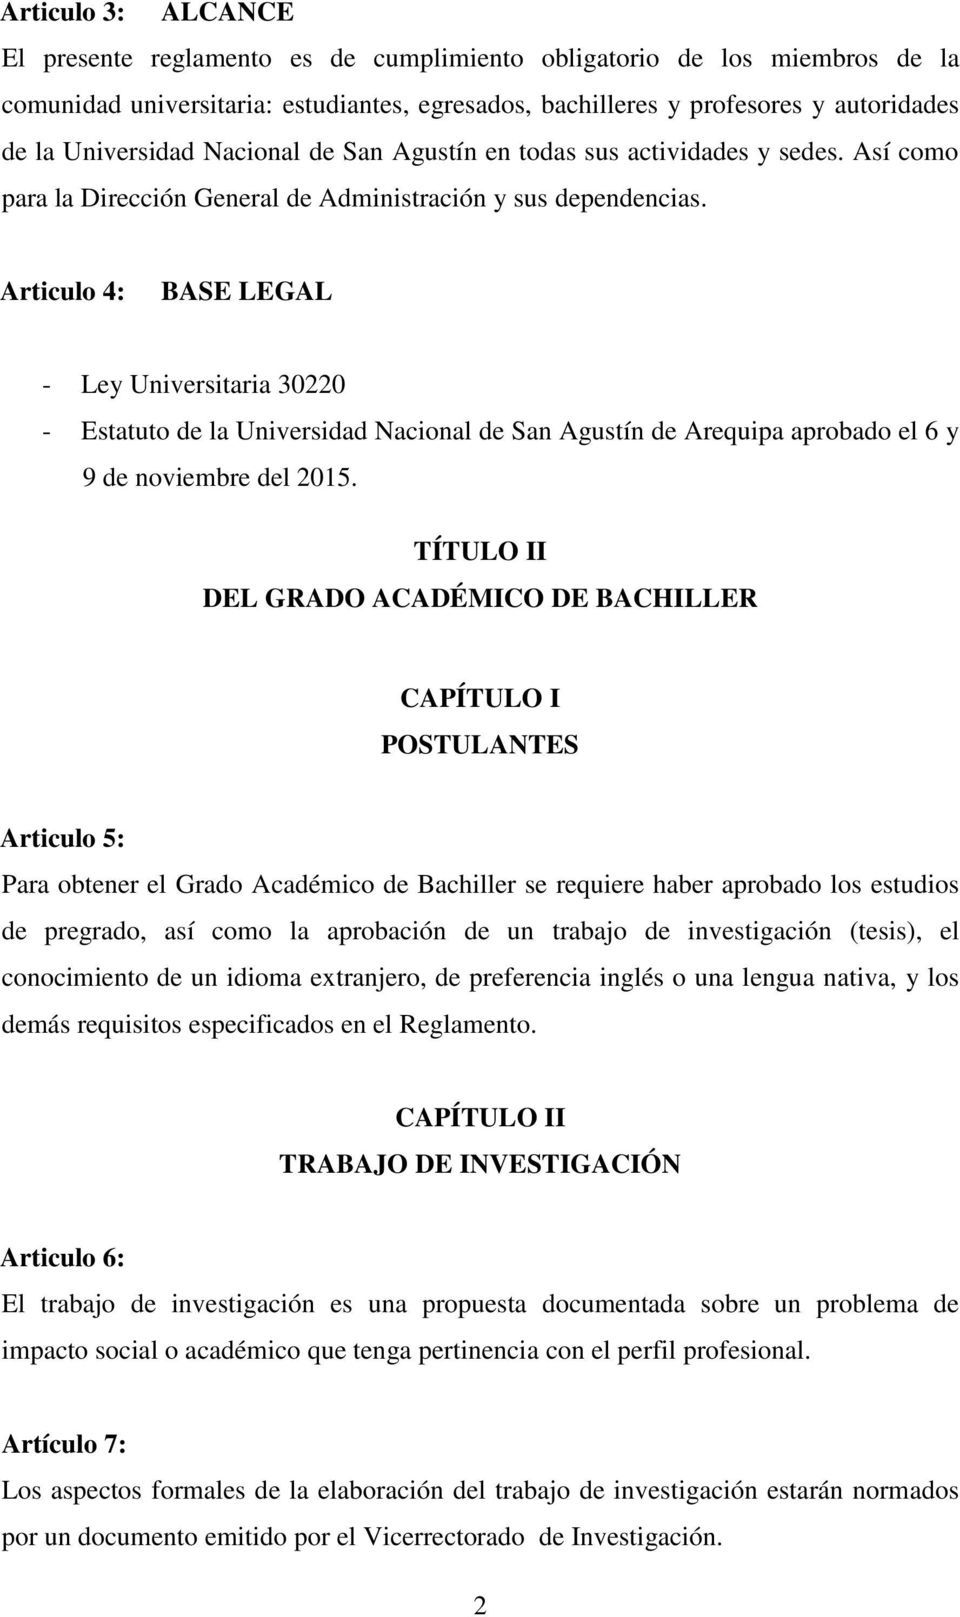 Articulo 4: BASE LEGAL - Ley Universitaria 30220 - Estatuto de la Universidad Nacional de San Agustín de Arequipa aprobado el 6 y 9 de noviembre del 2015.